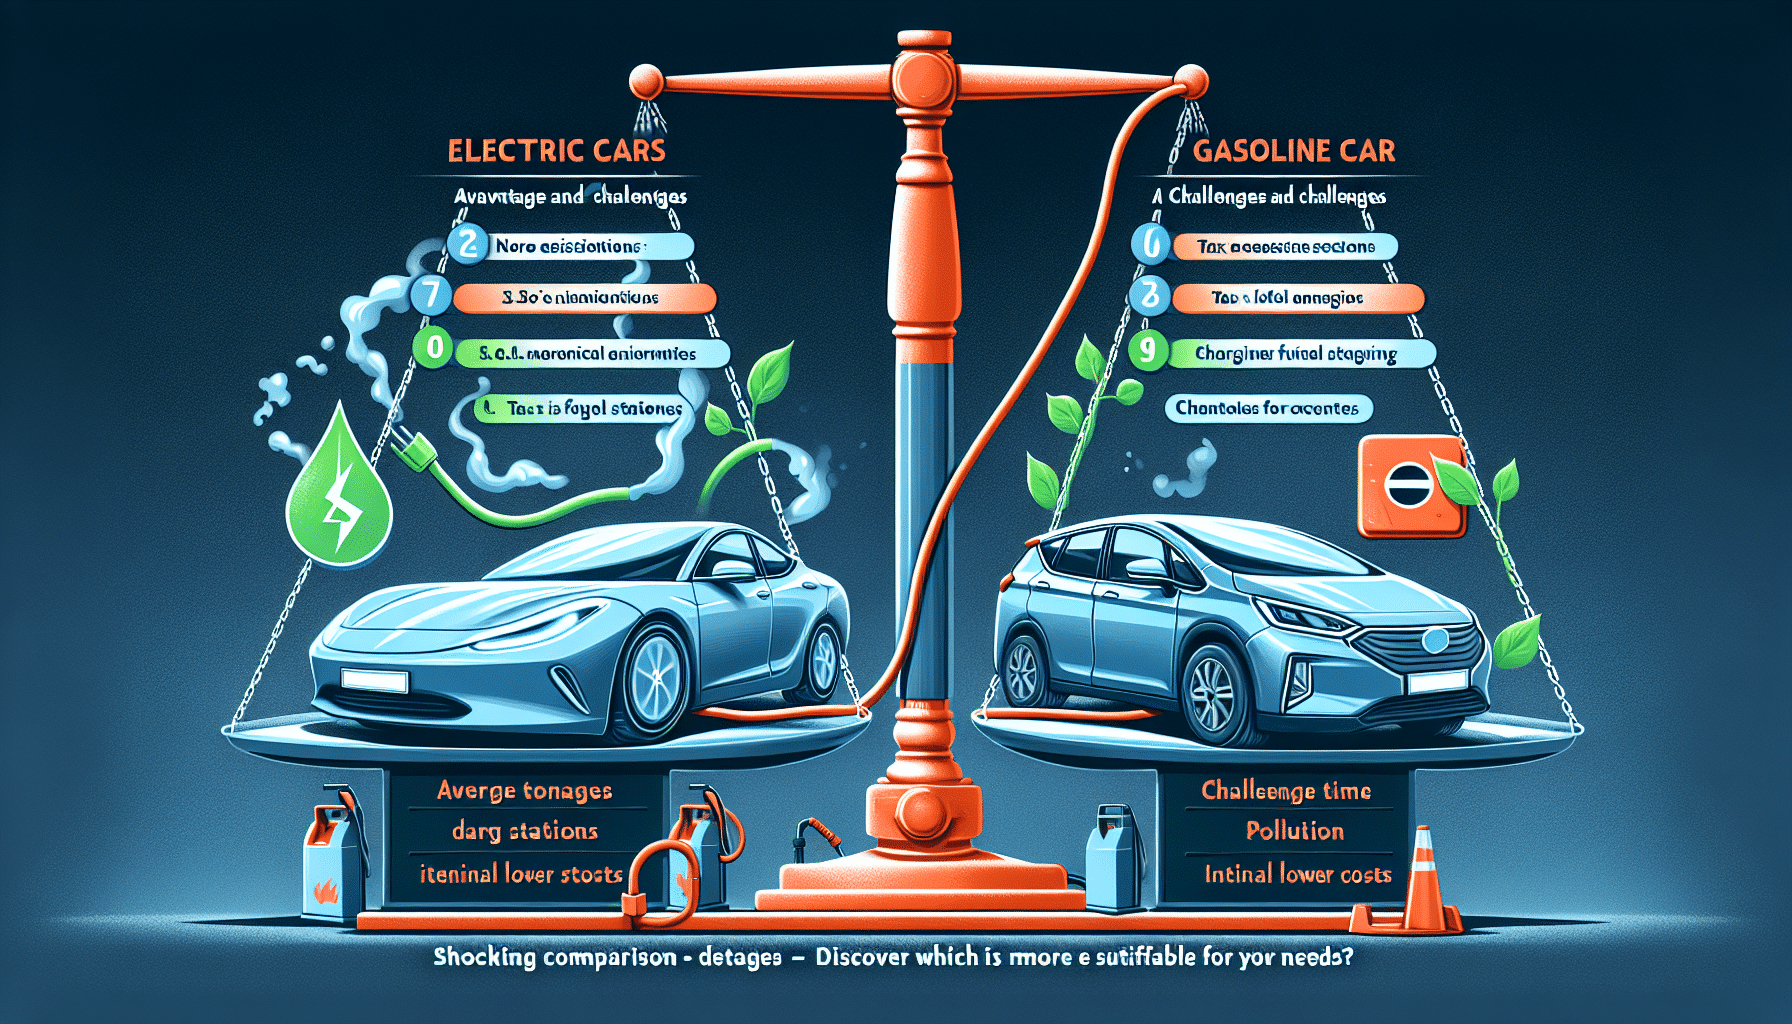 análisis completo de las ventajas y desafíos de los coches eléctricos frente a los de gasolina